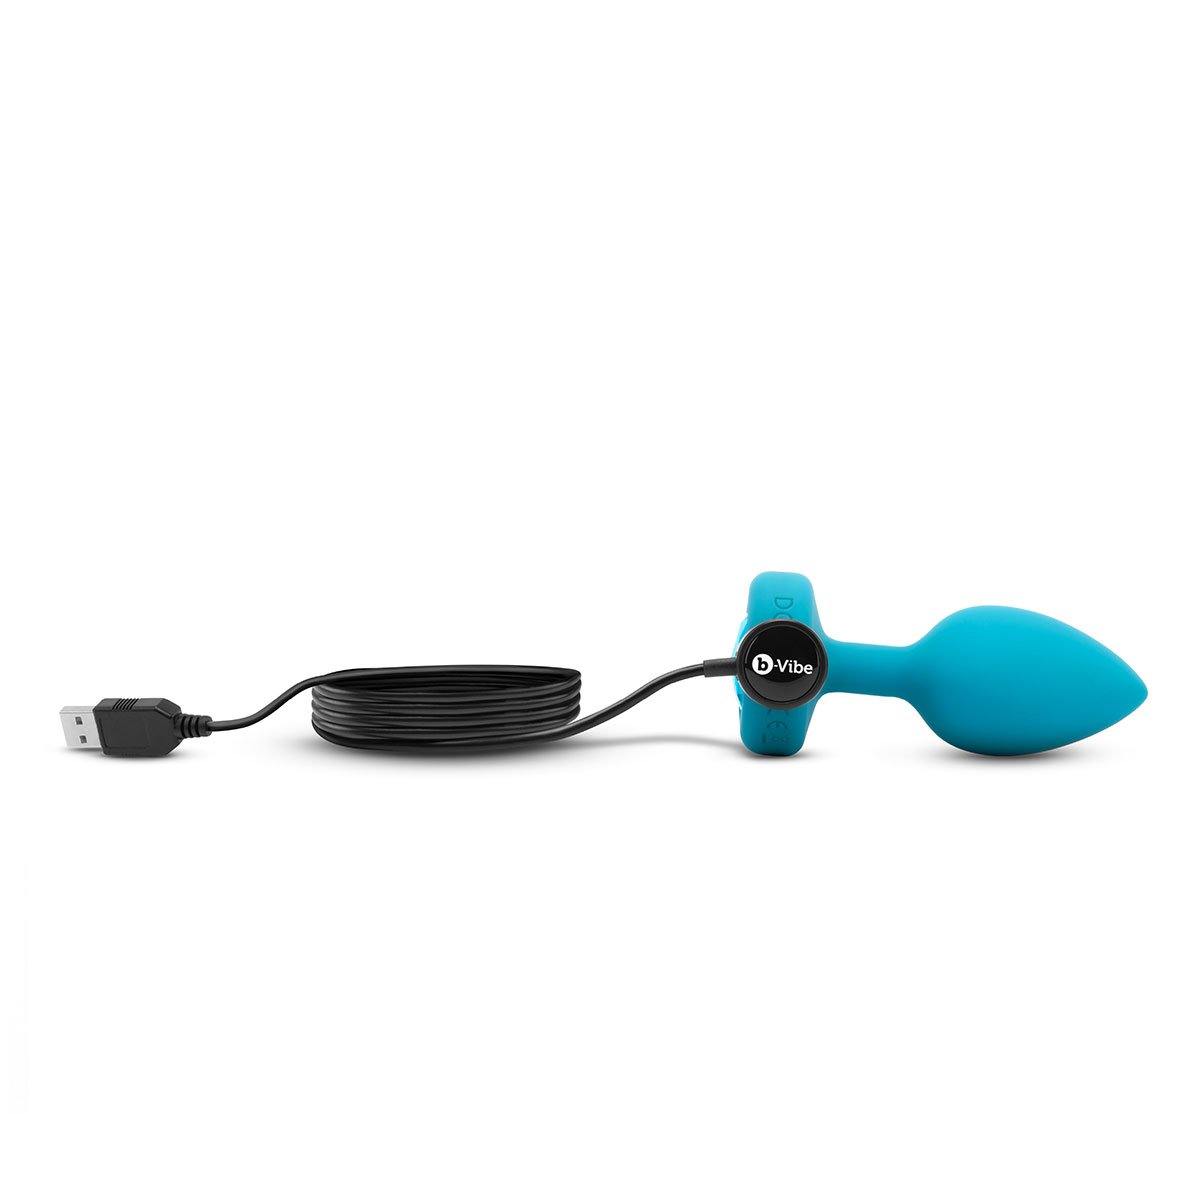 B-Vibe Vibrating Jewel Plug Small/Medium - Aqua - Buy At Luxury Toy X - Free 3-Day Shipping